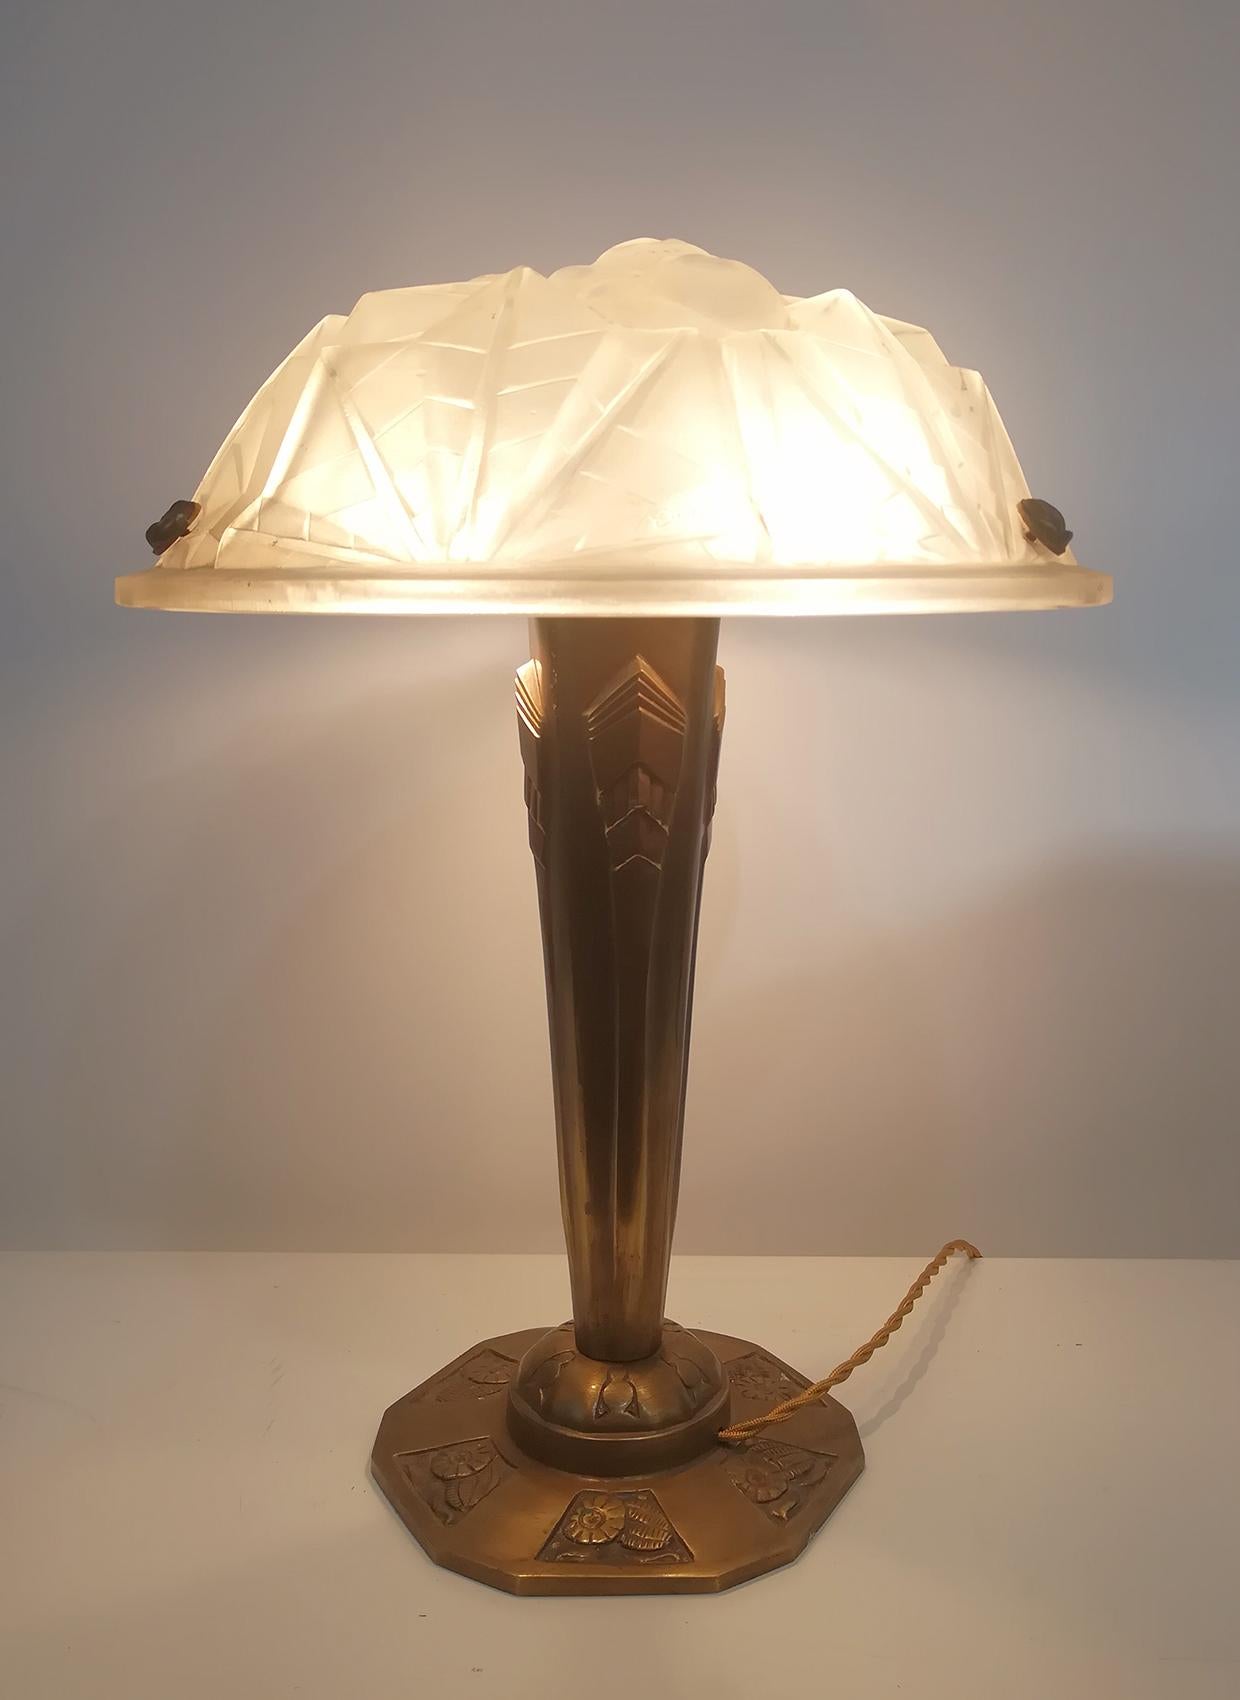 Charmante paire de lampes de table Art Déco, panneau en verre moulé de haute qualité (diamètre 35 cm) avec un rare motif floral original en relief incluant la signature 